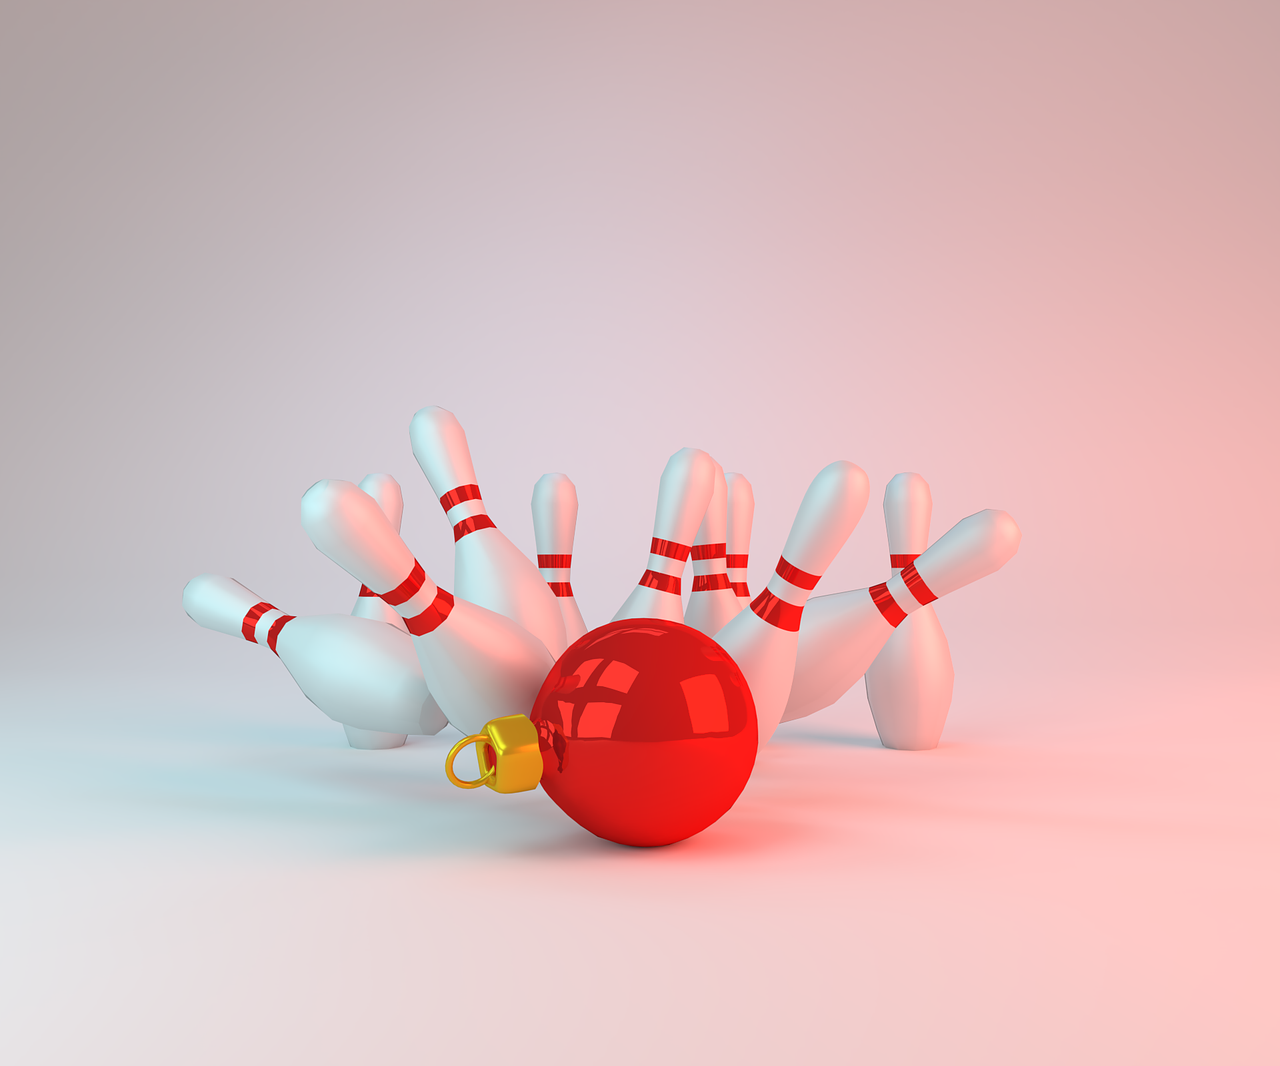 Weihnachtskugel trifft Bowlingpins - Bild von gigabeto auf pixabay